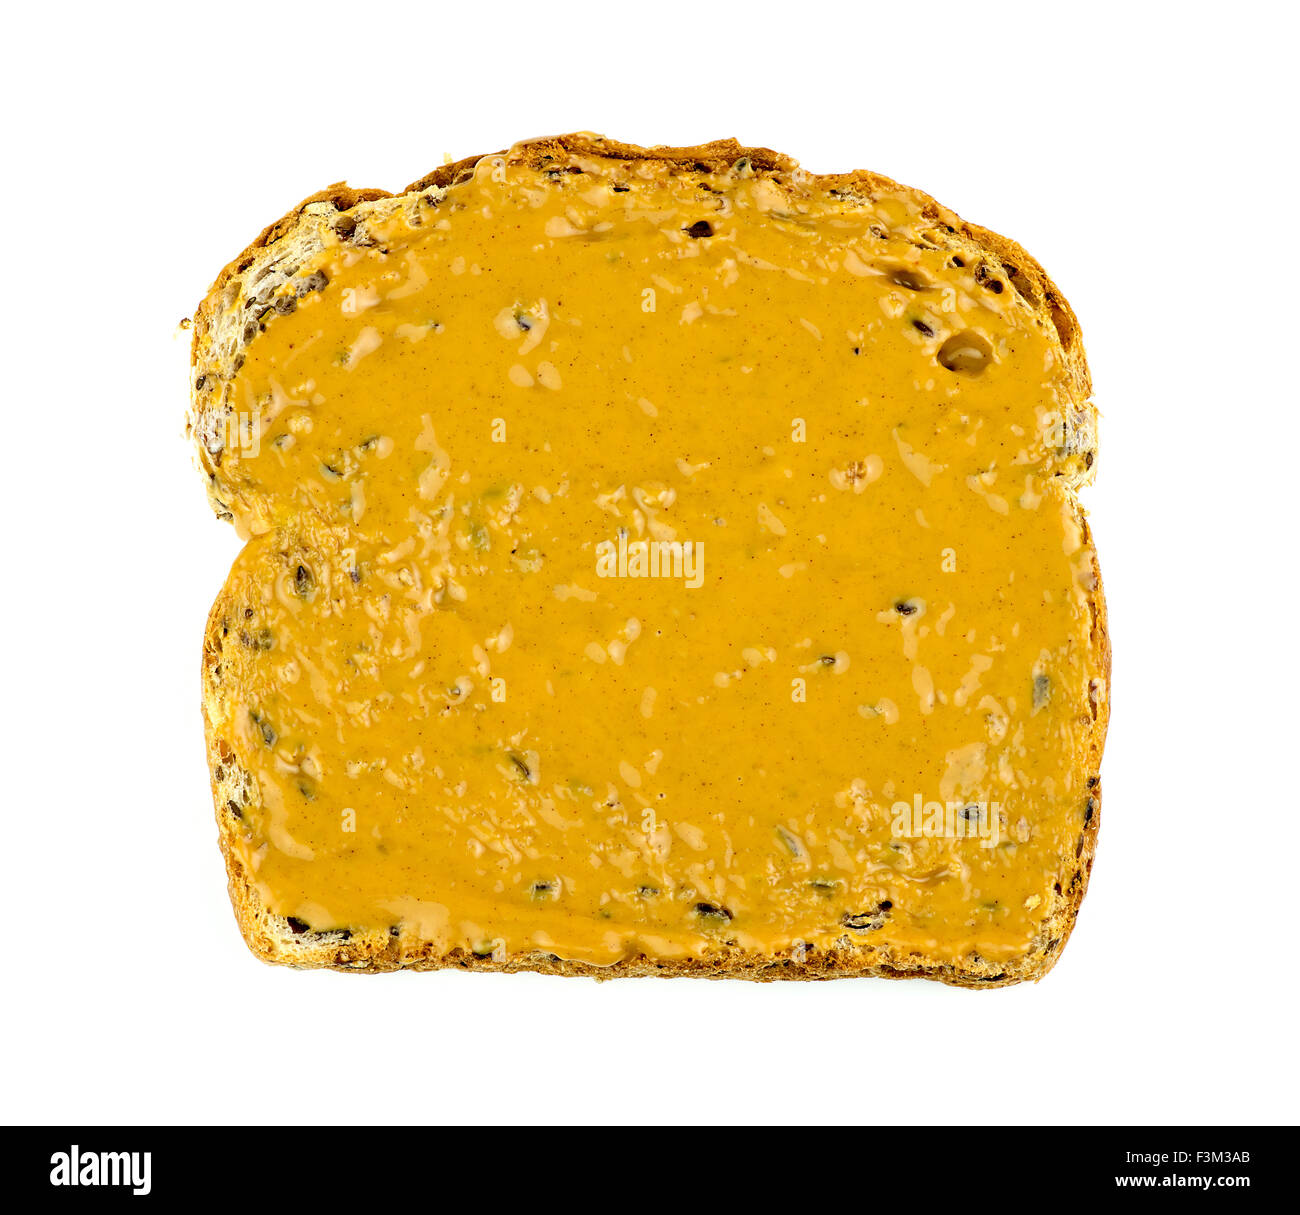 Antenna isolata di toast con crema di burro di arachidi Foto Stock